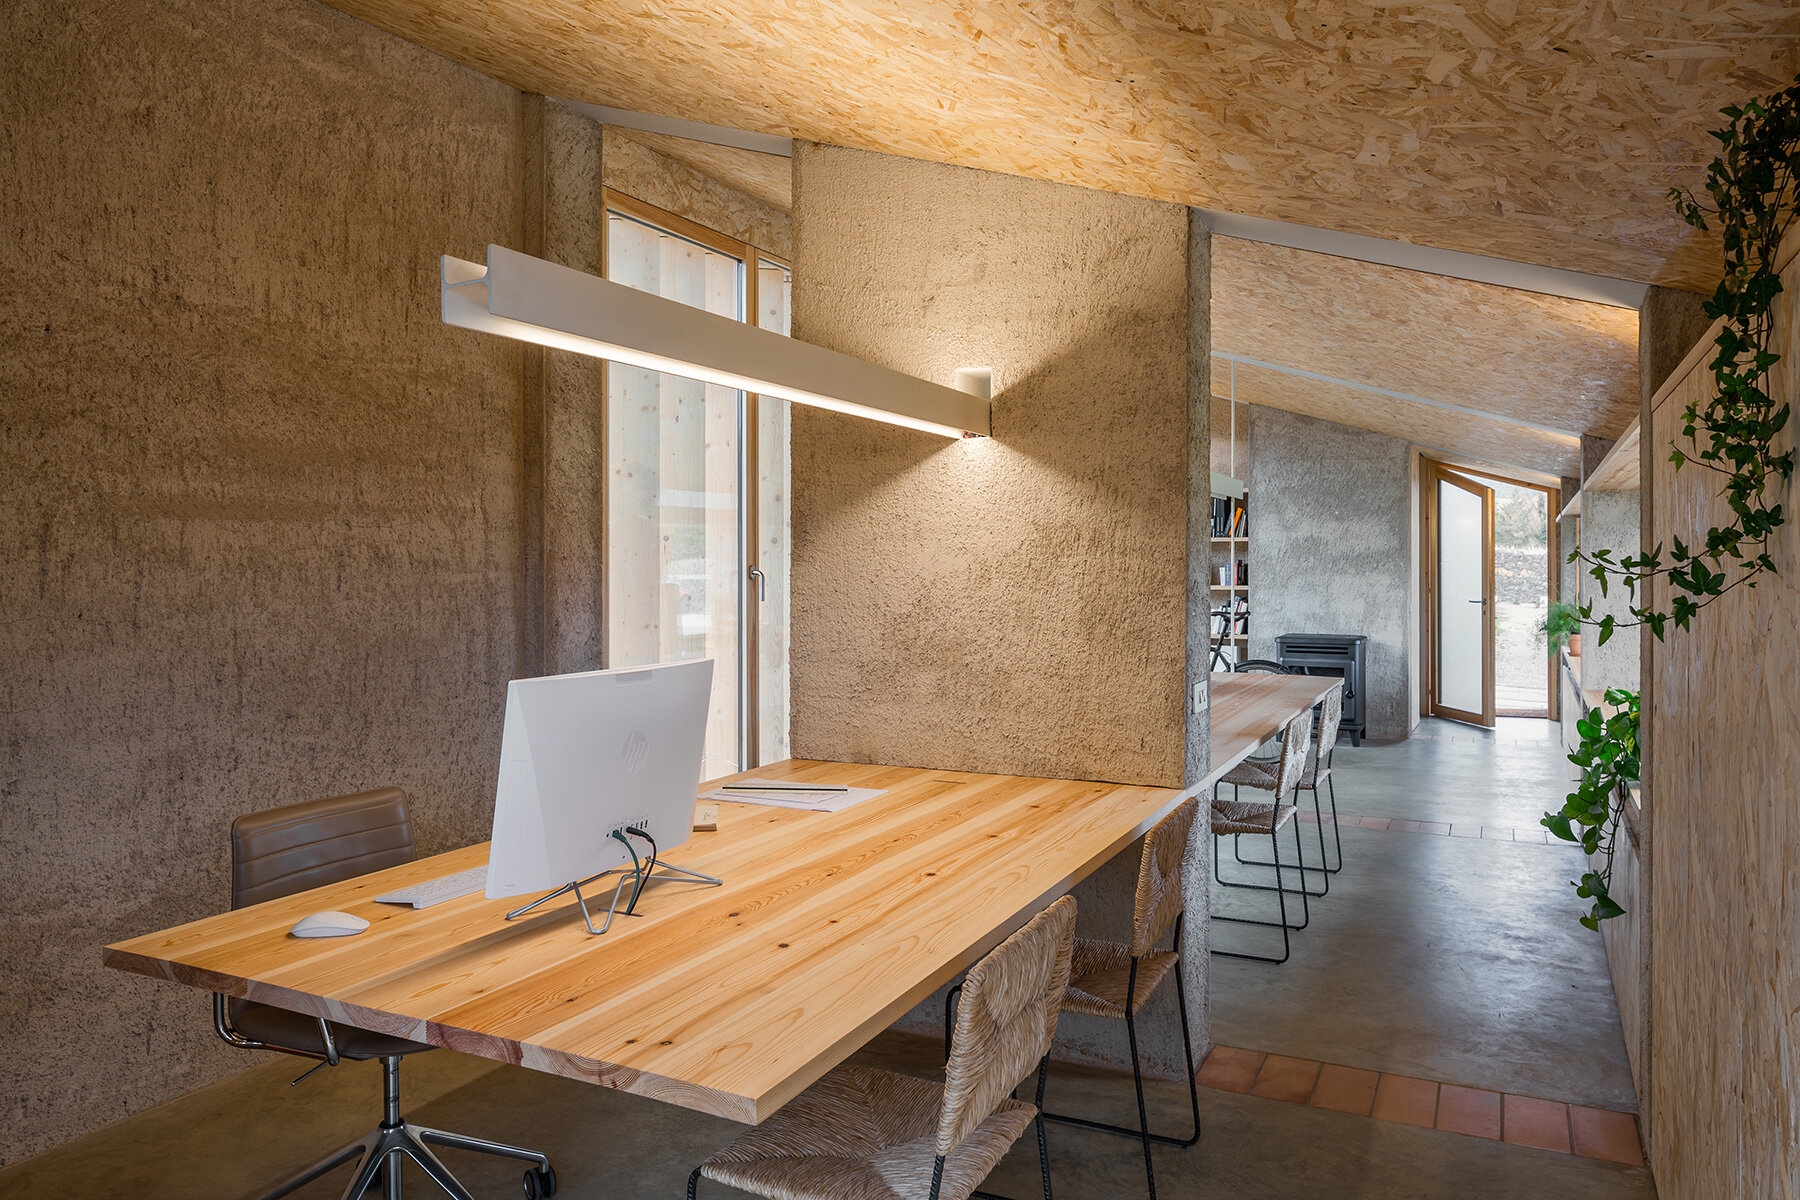 arnau estudi d'arquitectura clads spanish restaurant with timber slats